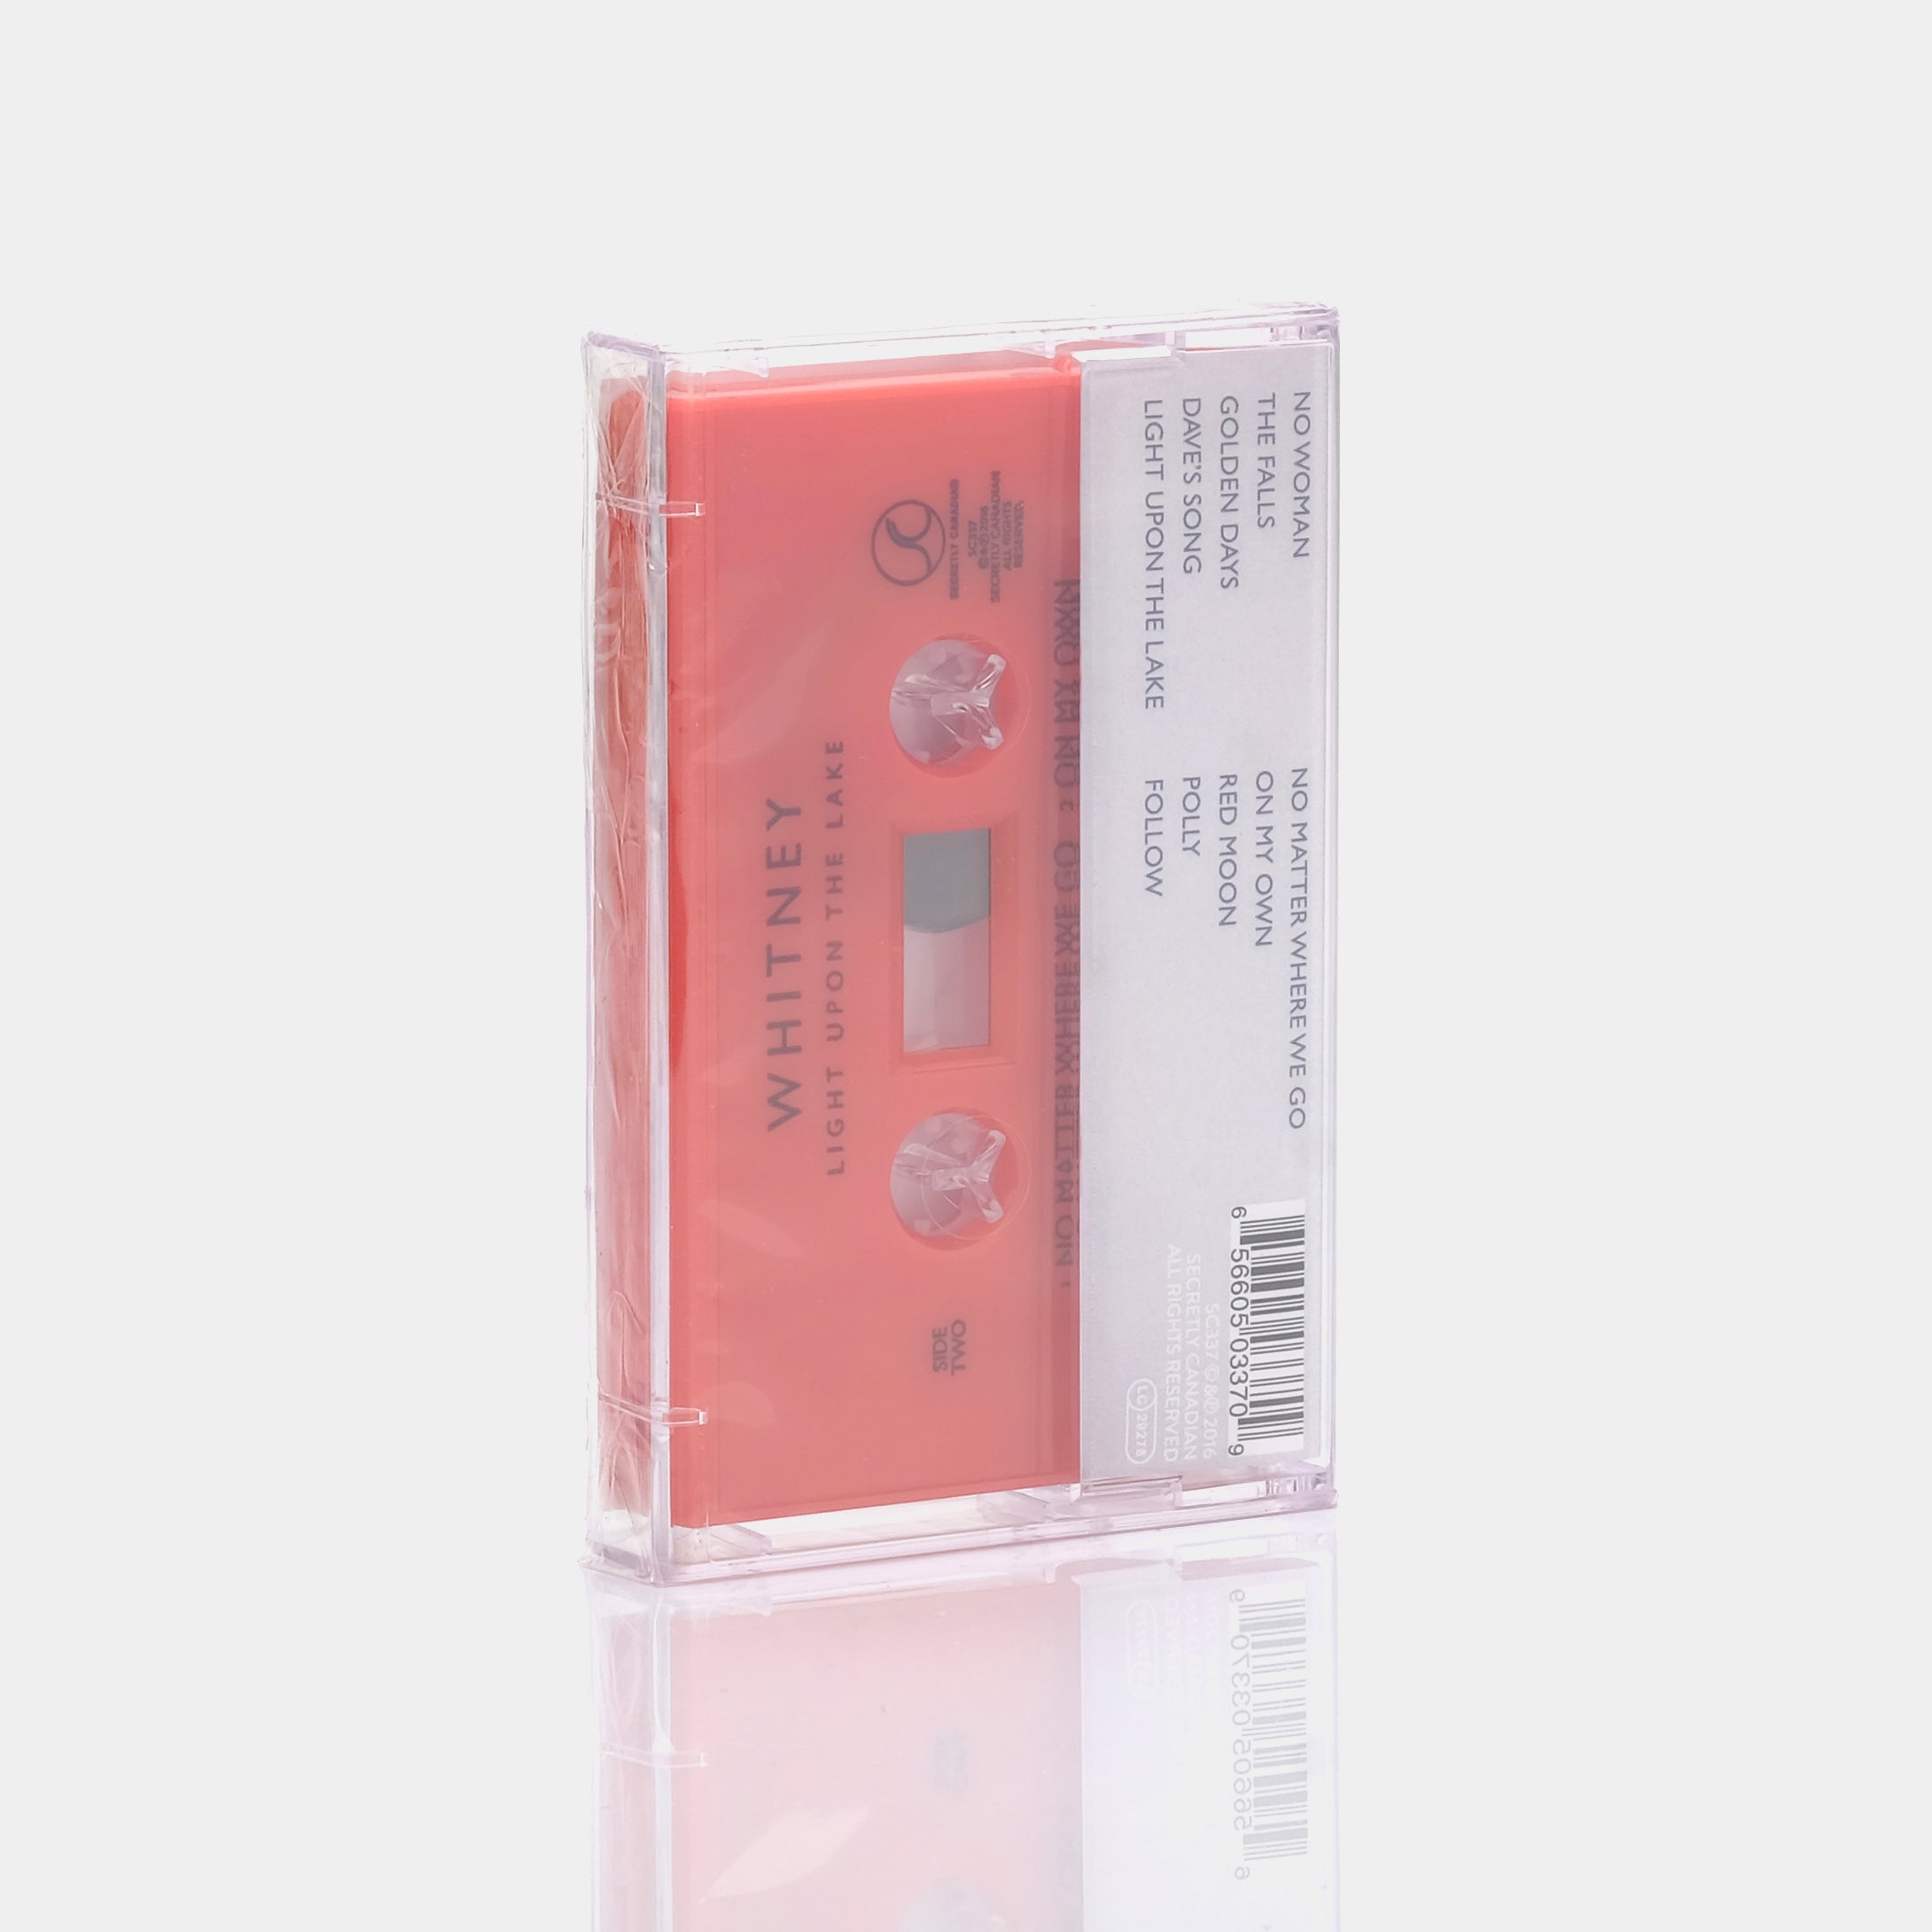 Whitney - Light Upon The Lake Cassette Tape